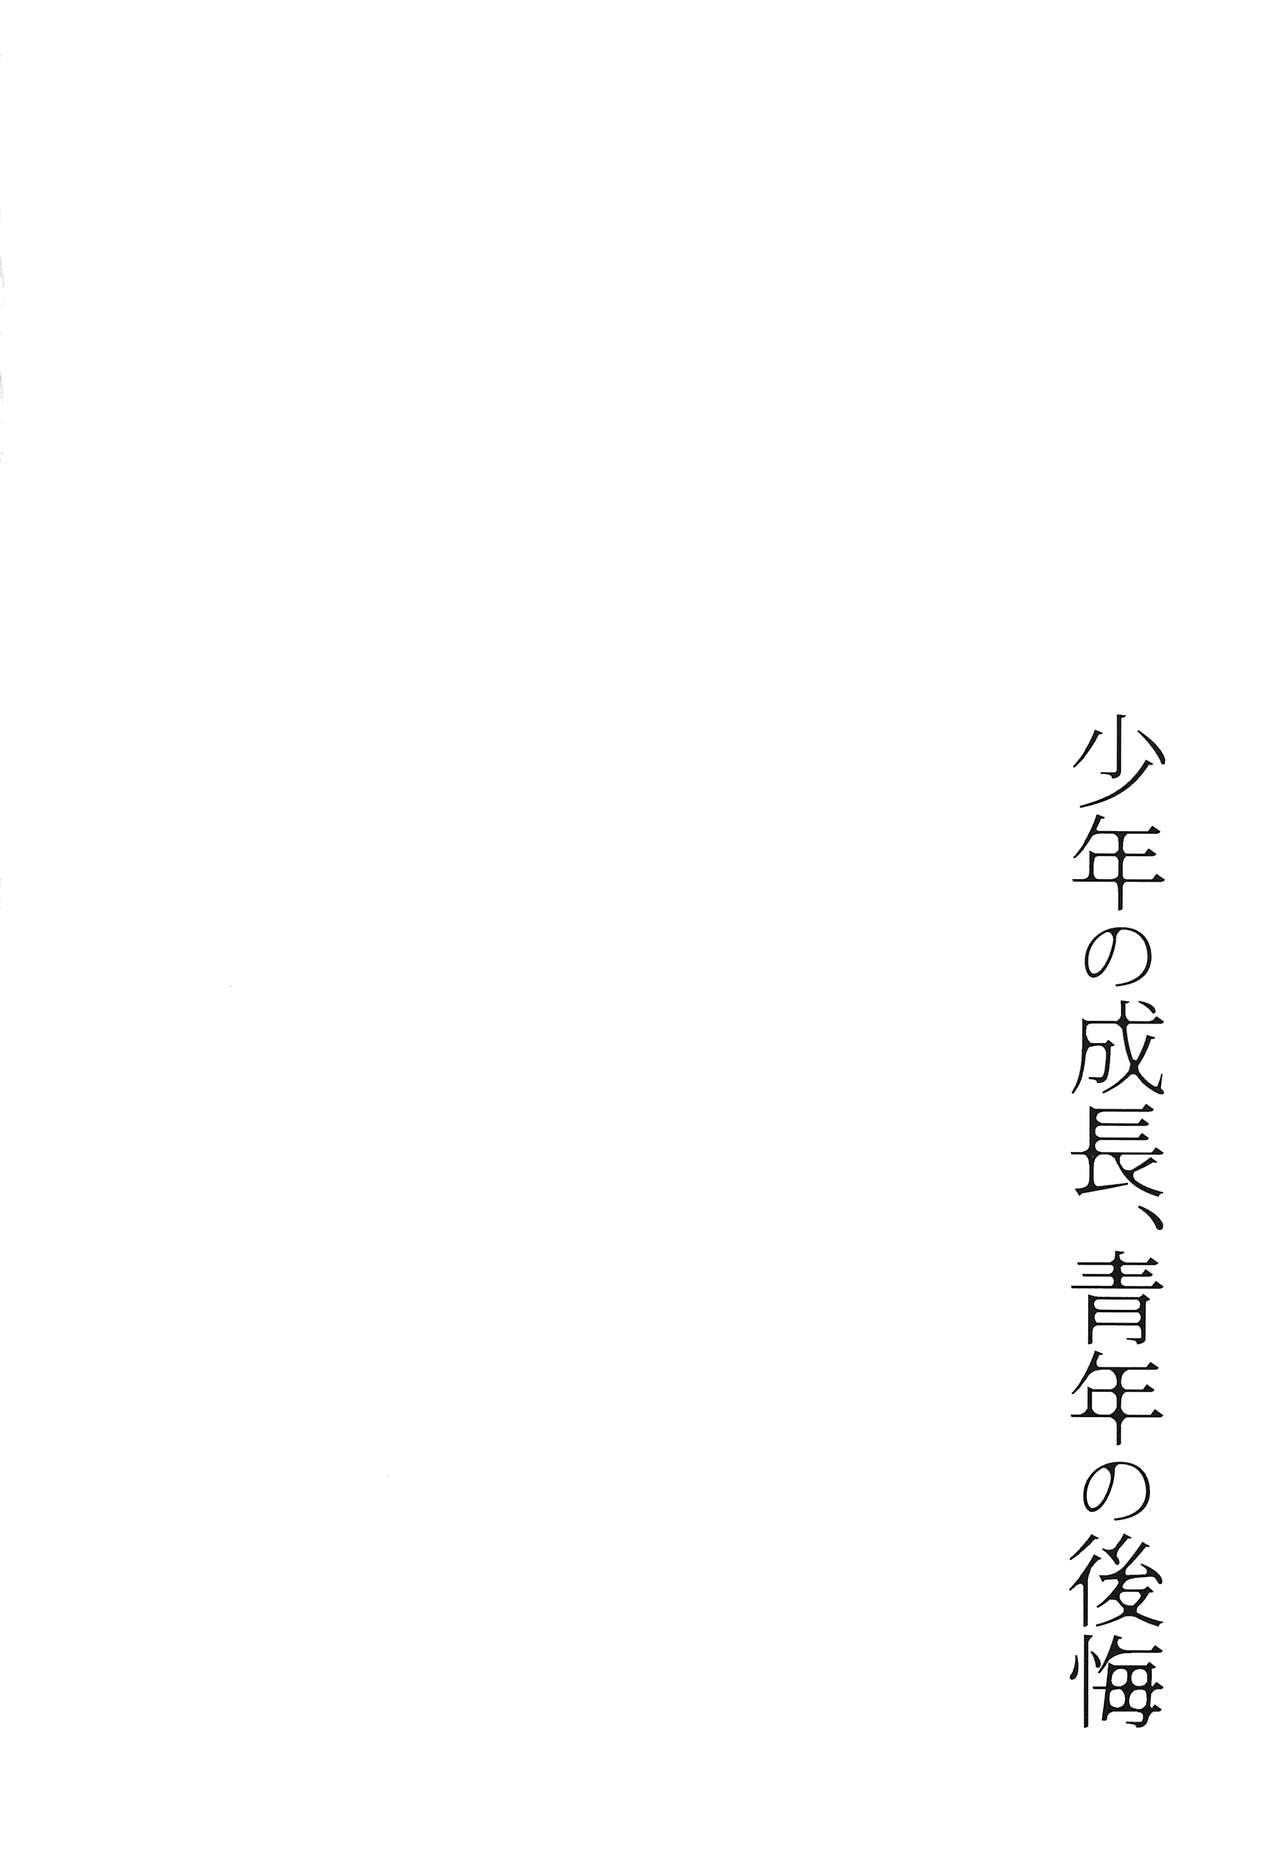 Harcore Shounen no seichou, seinen no koukai - Mobile suit gundam tekketsu no orphans Oiled - Page 3